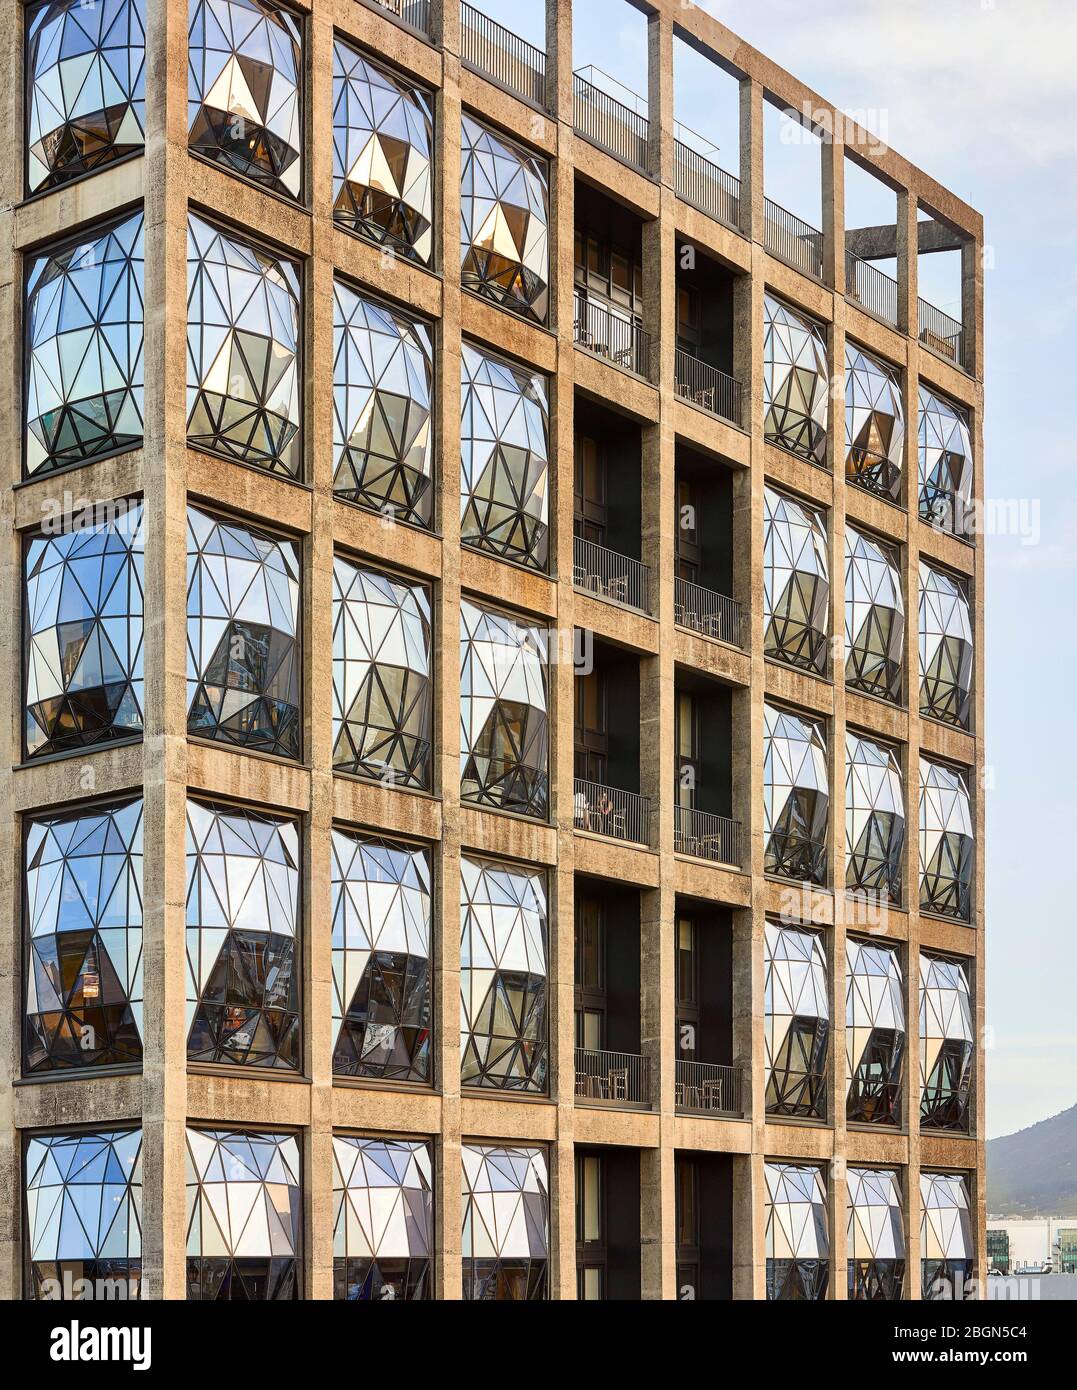 Primo piano delle finestre con facciate in vetro. Zeitz MOCAA, Città del Capo, Sudafrica. Architetto: Heatherwick Studio, 2017. Foto Stock